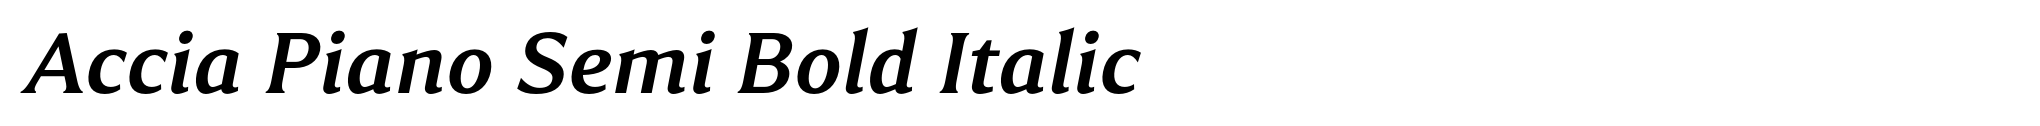 Accia Piano Semi Bold Italic image